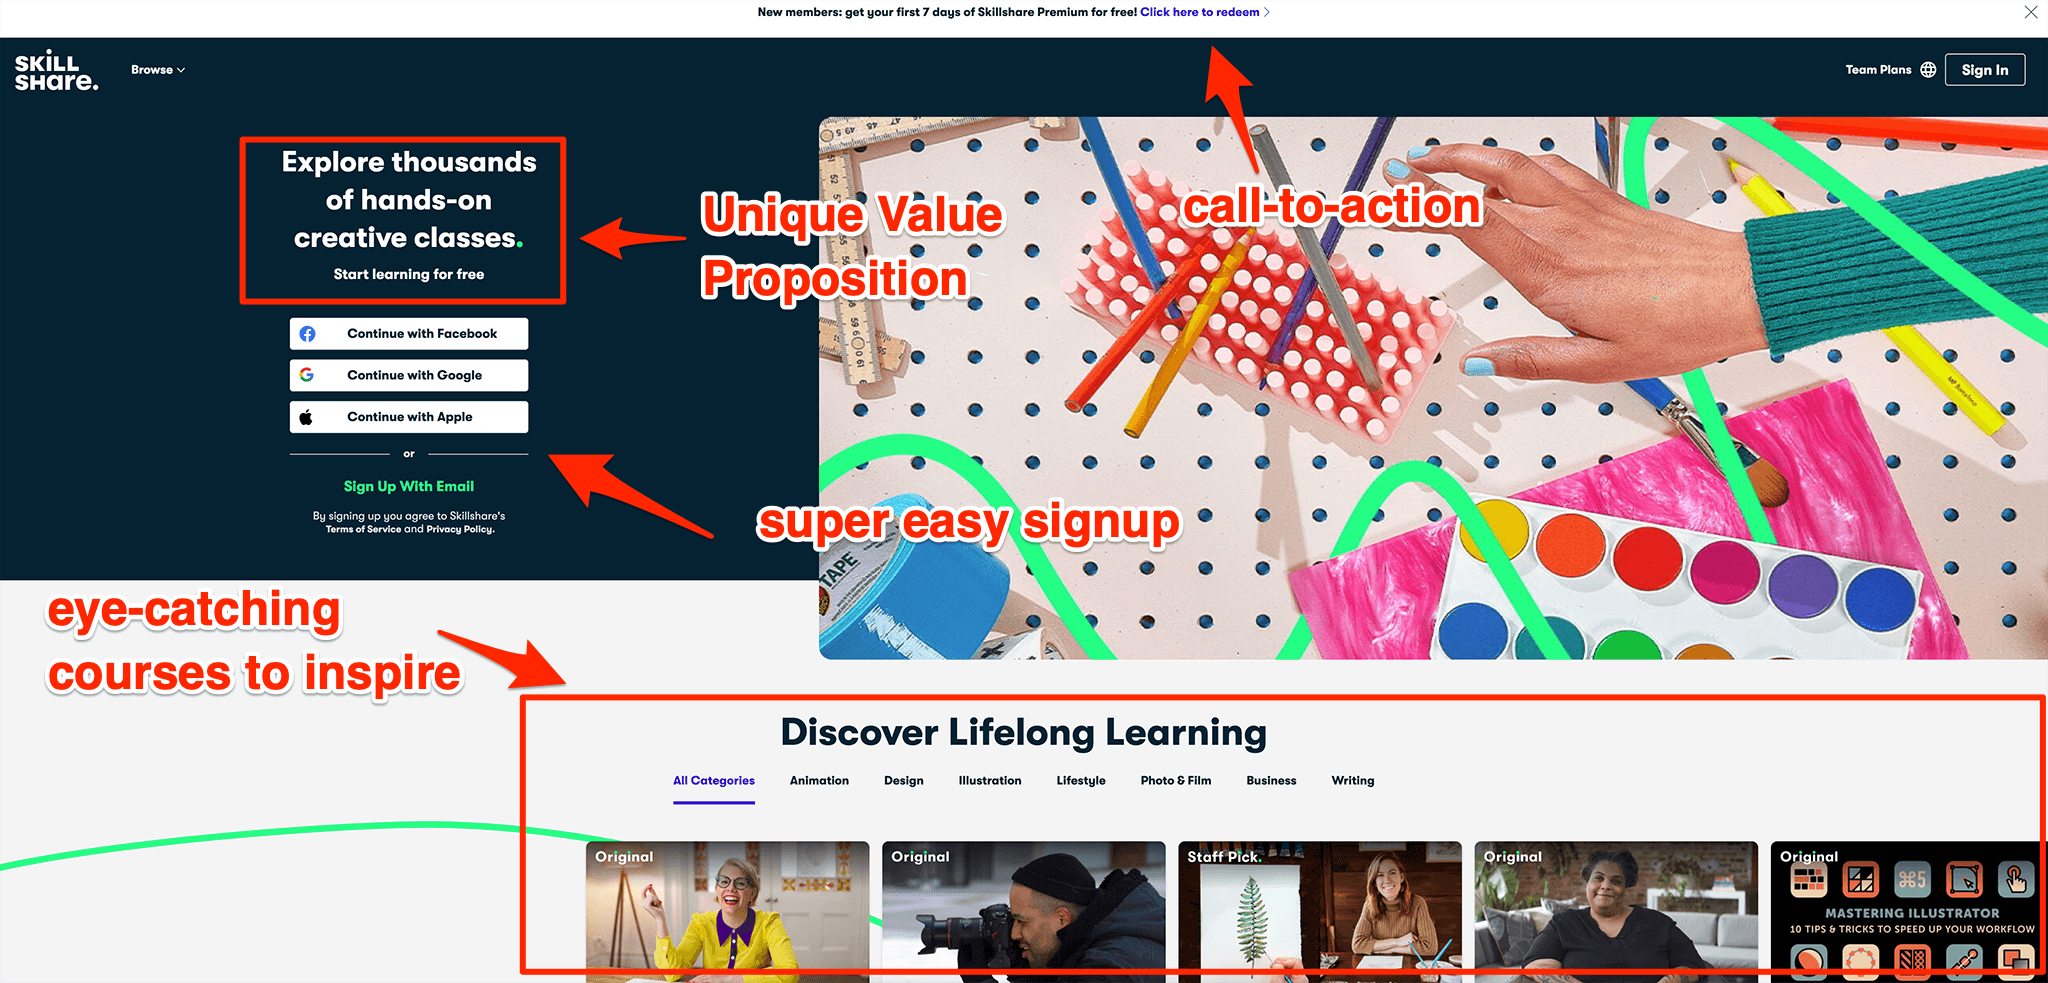 Skillshare's homepage